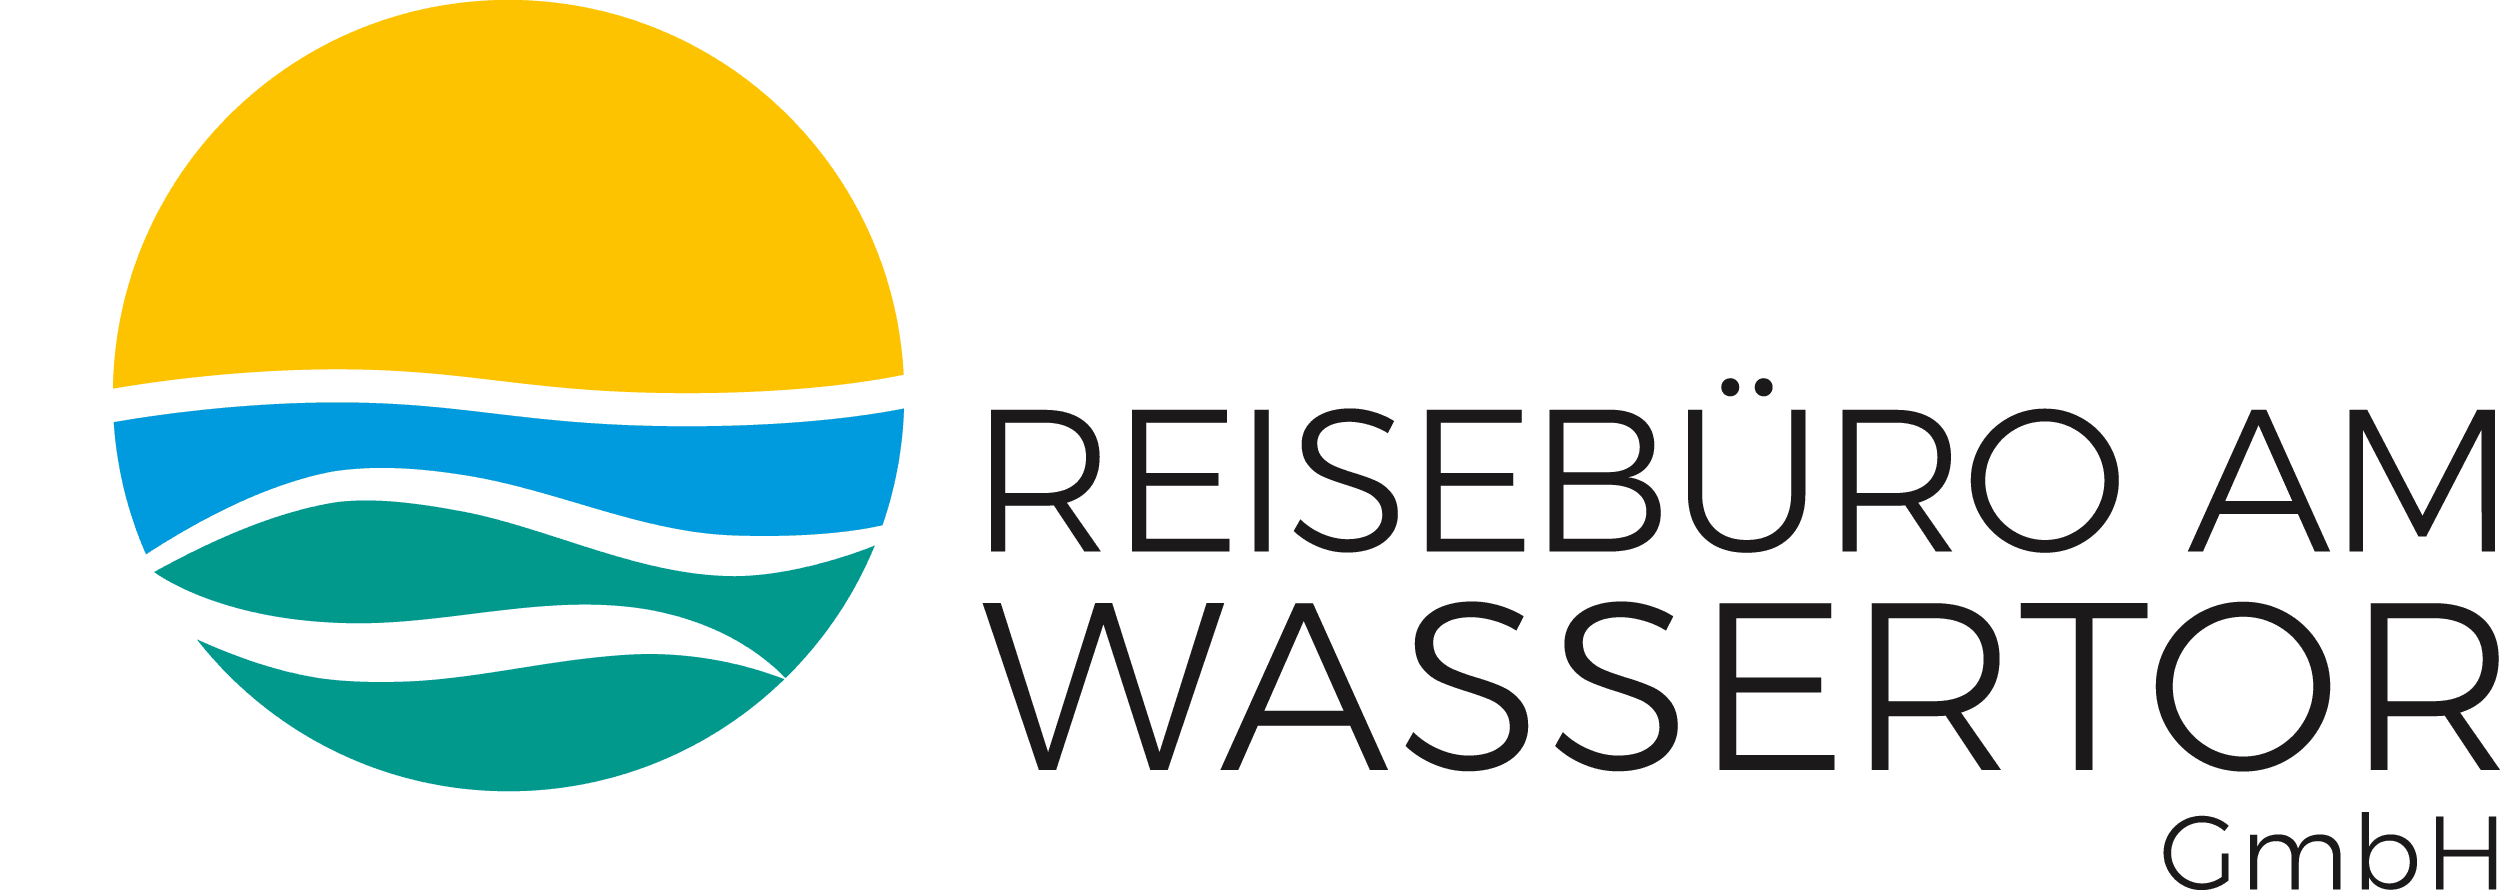 Reisebüro am Wassertor GmbH